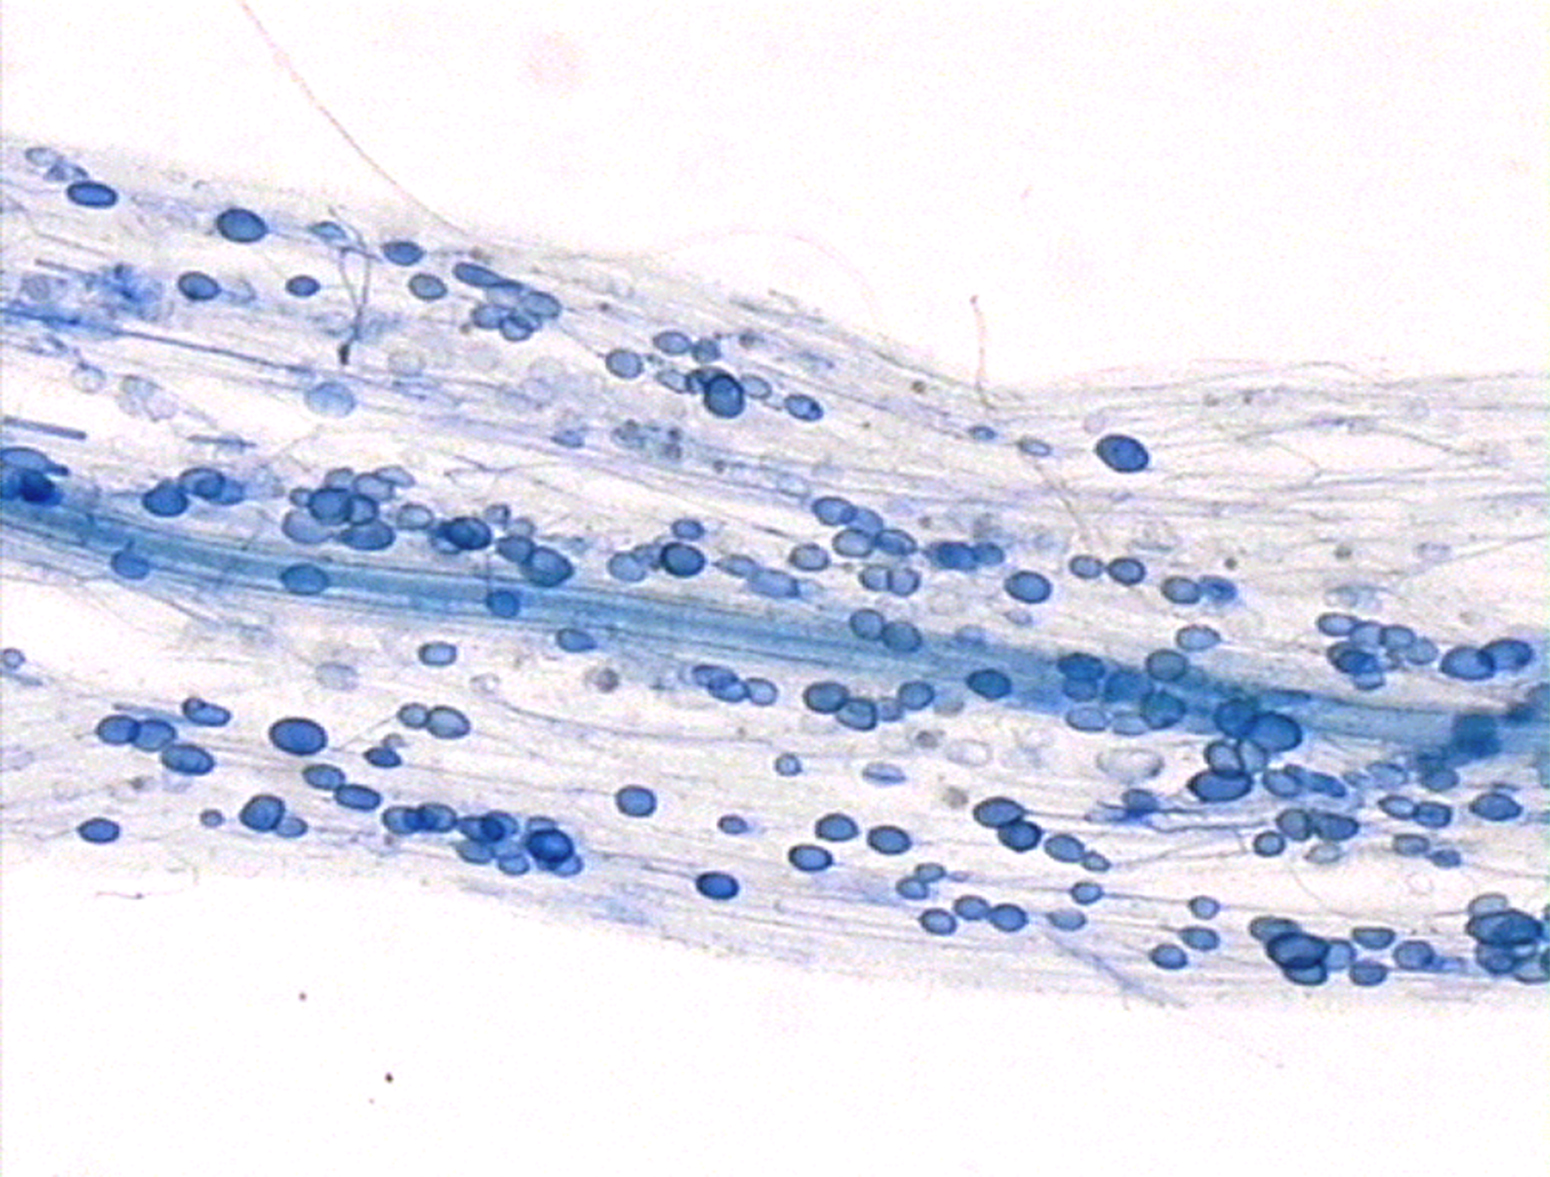 Hier sieht man die Symbiose zwischen Pilzen und Pflanzen: Mykorrhiza. In einer Wurzel sind mal blau angefärbte Punkte